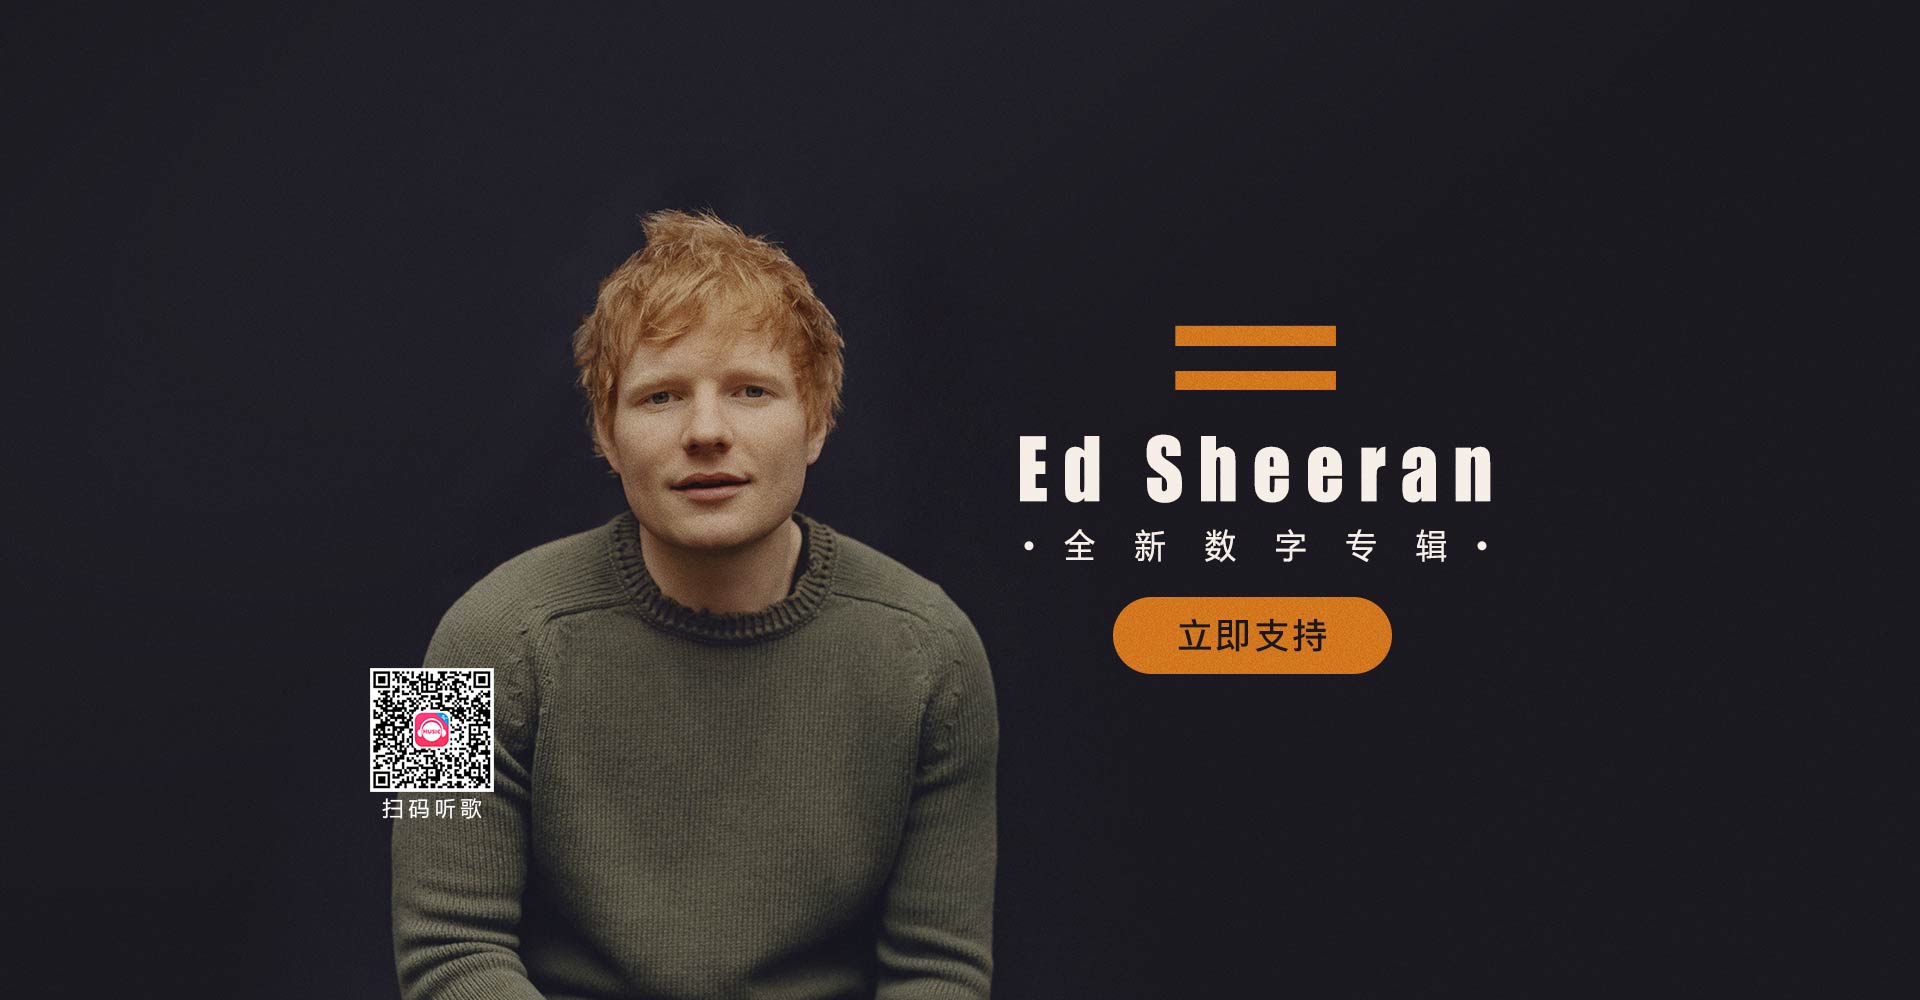 【数字专辑】Ed Sheeran数字专辑《=》